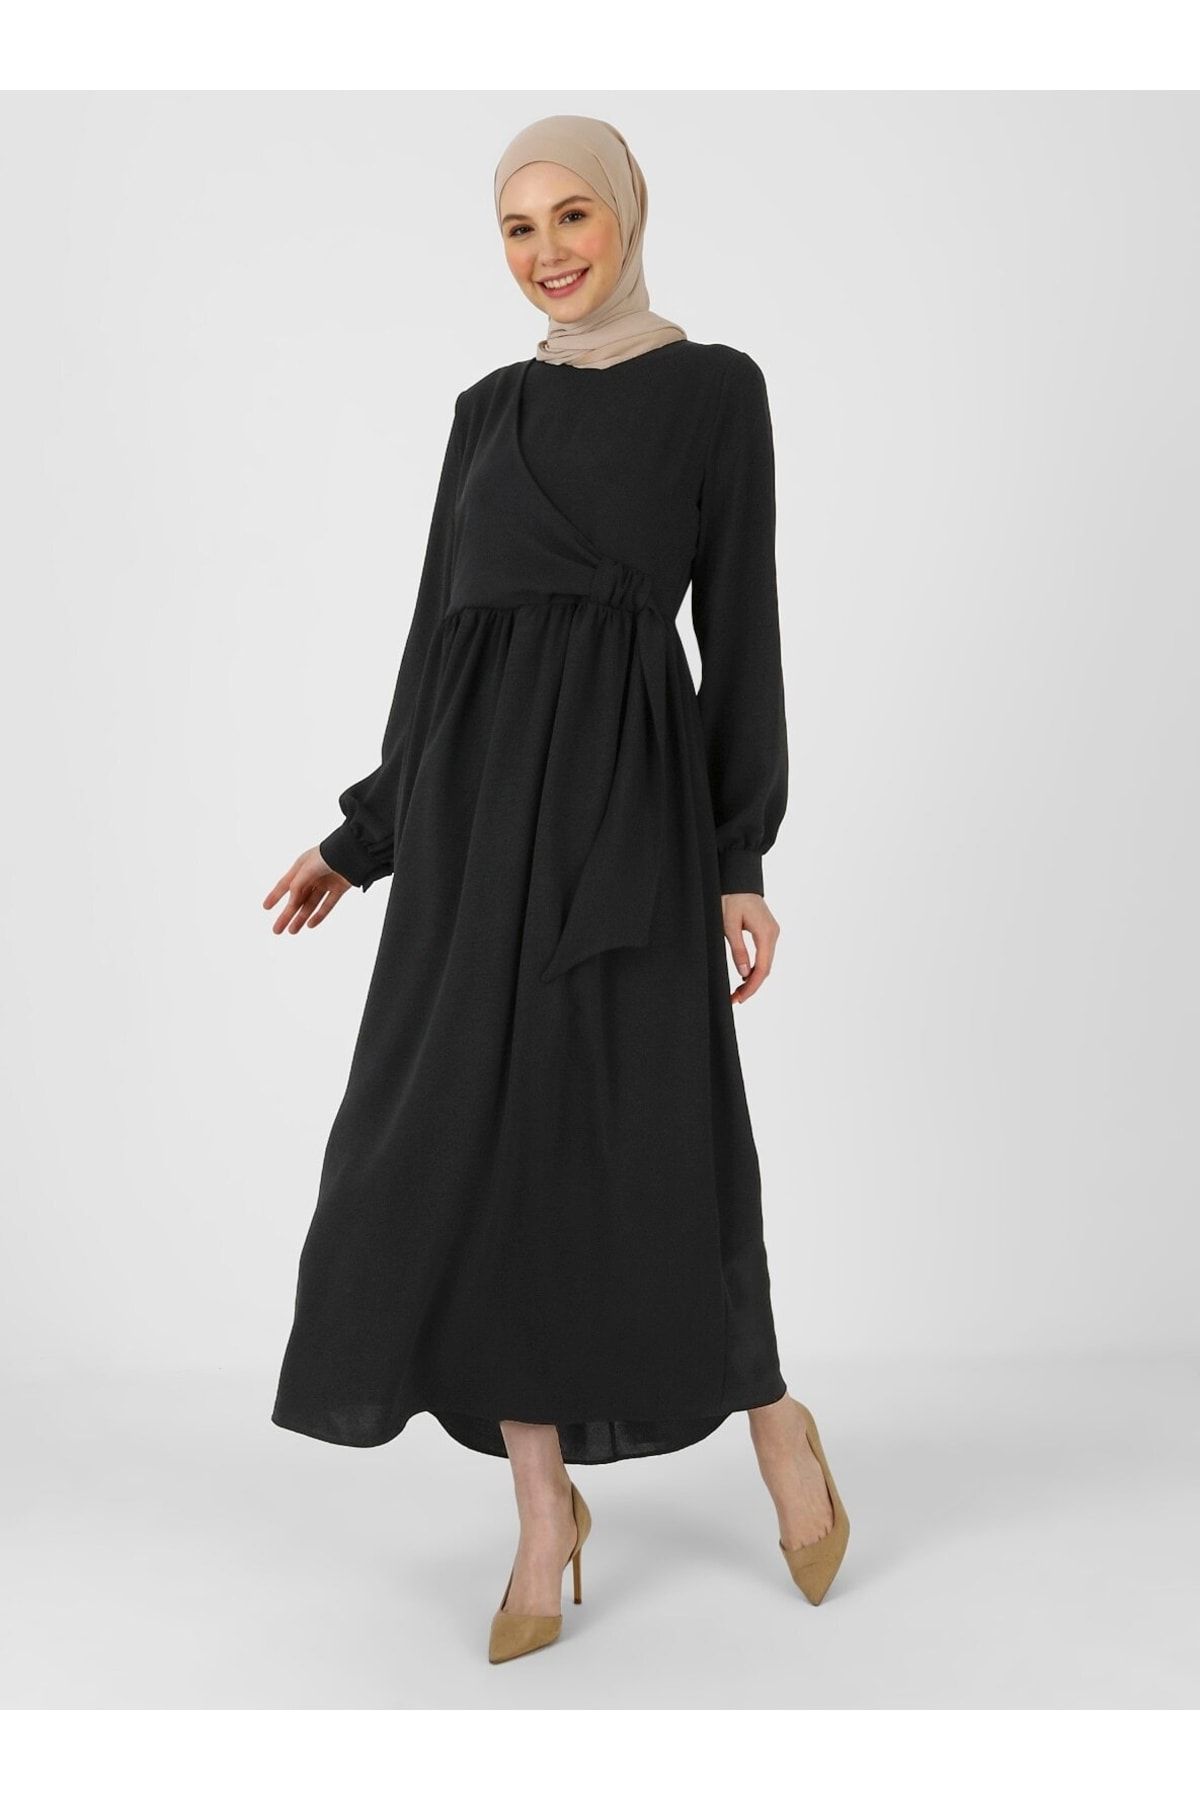 Refka Belde Bağlama Detaylı Tesettür Elbise - Siyah - Woman